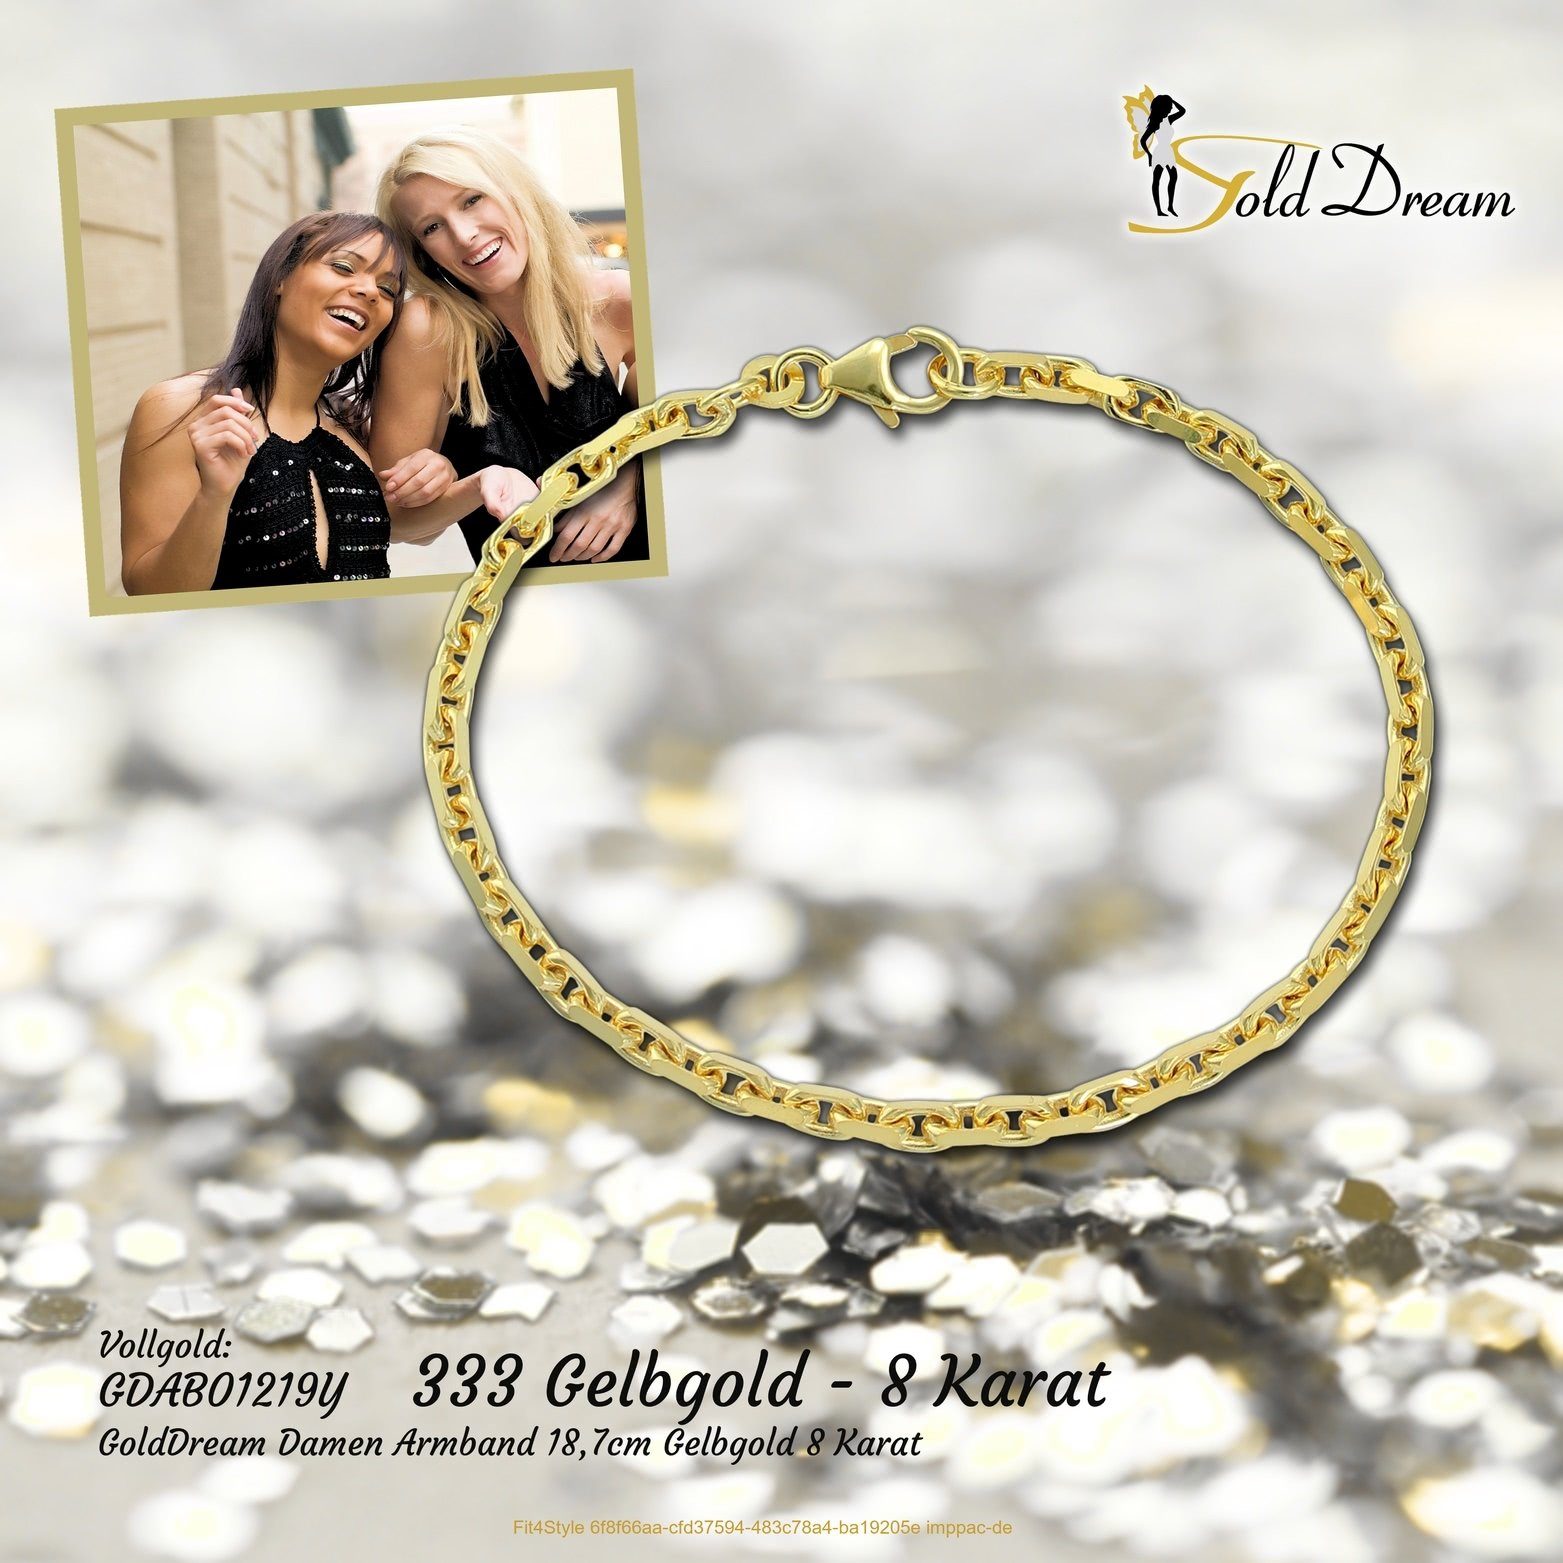 GoldDream Echtgold Armband Gelbgold Echtgold, Goldarmband 18,7cm, 333er Armband (Armband, Armband), 8K Damen GoldDream Gelbgold